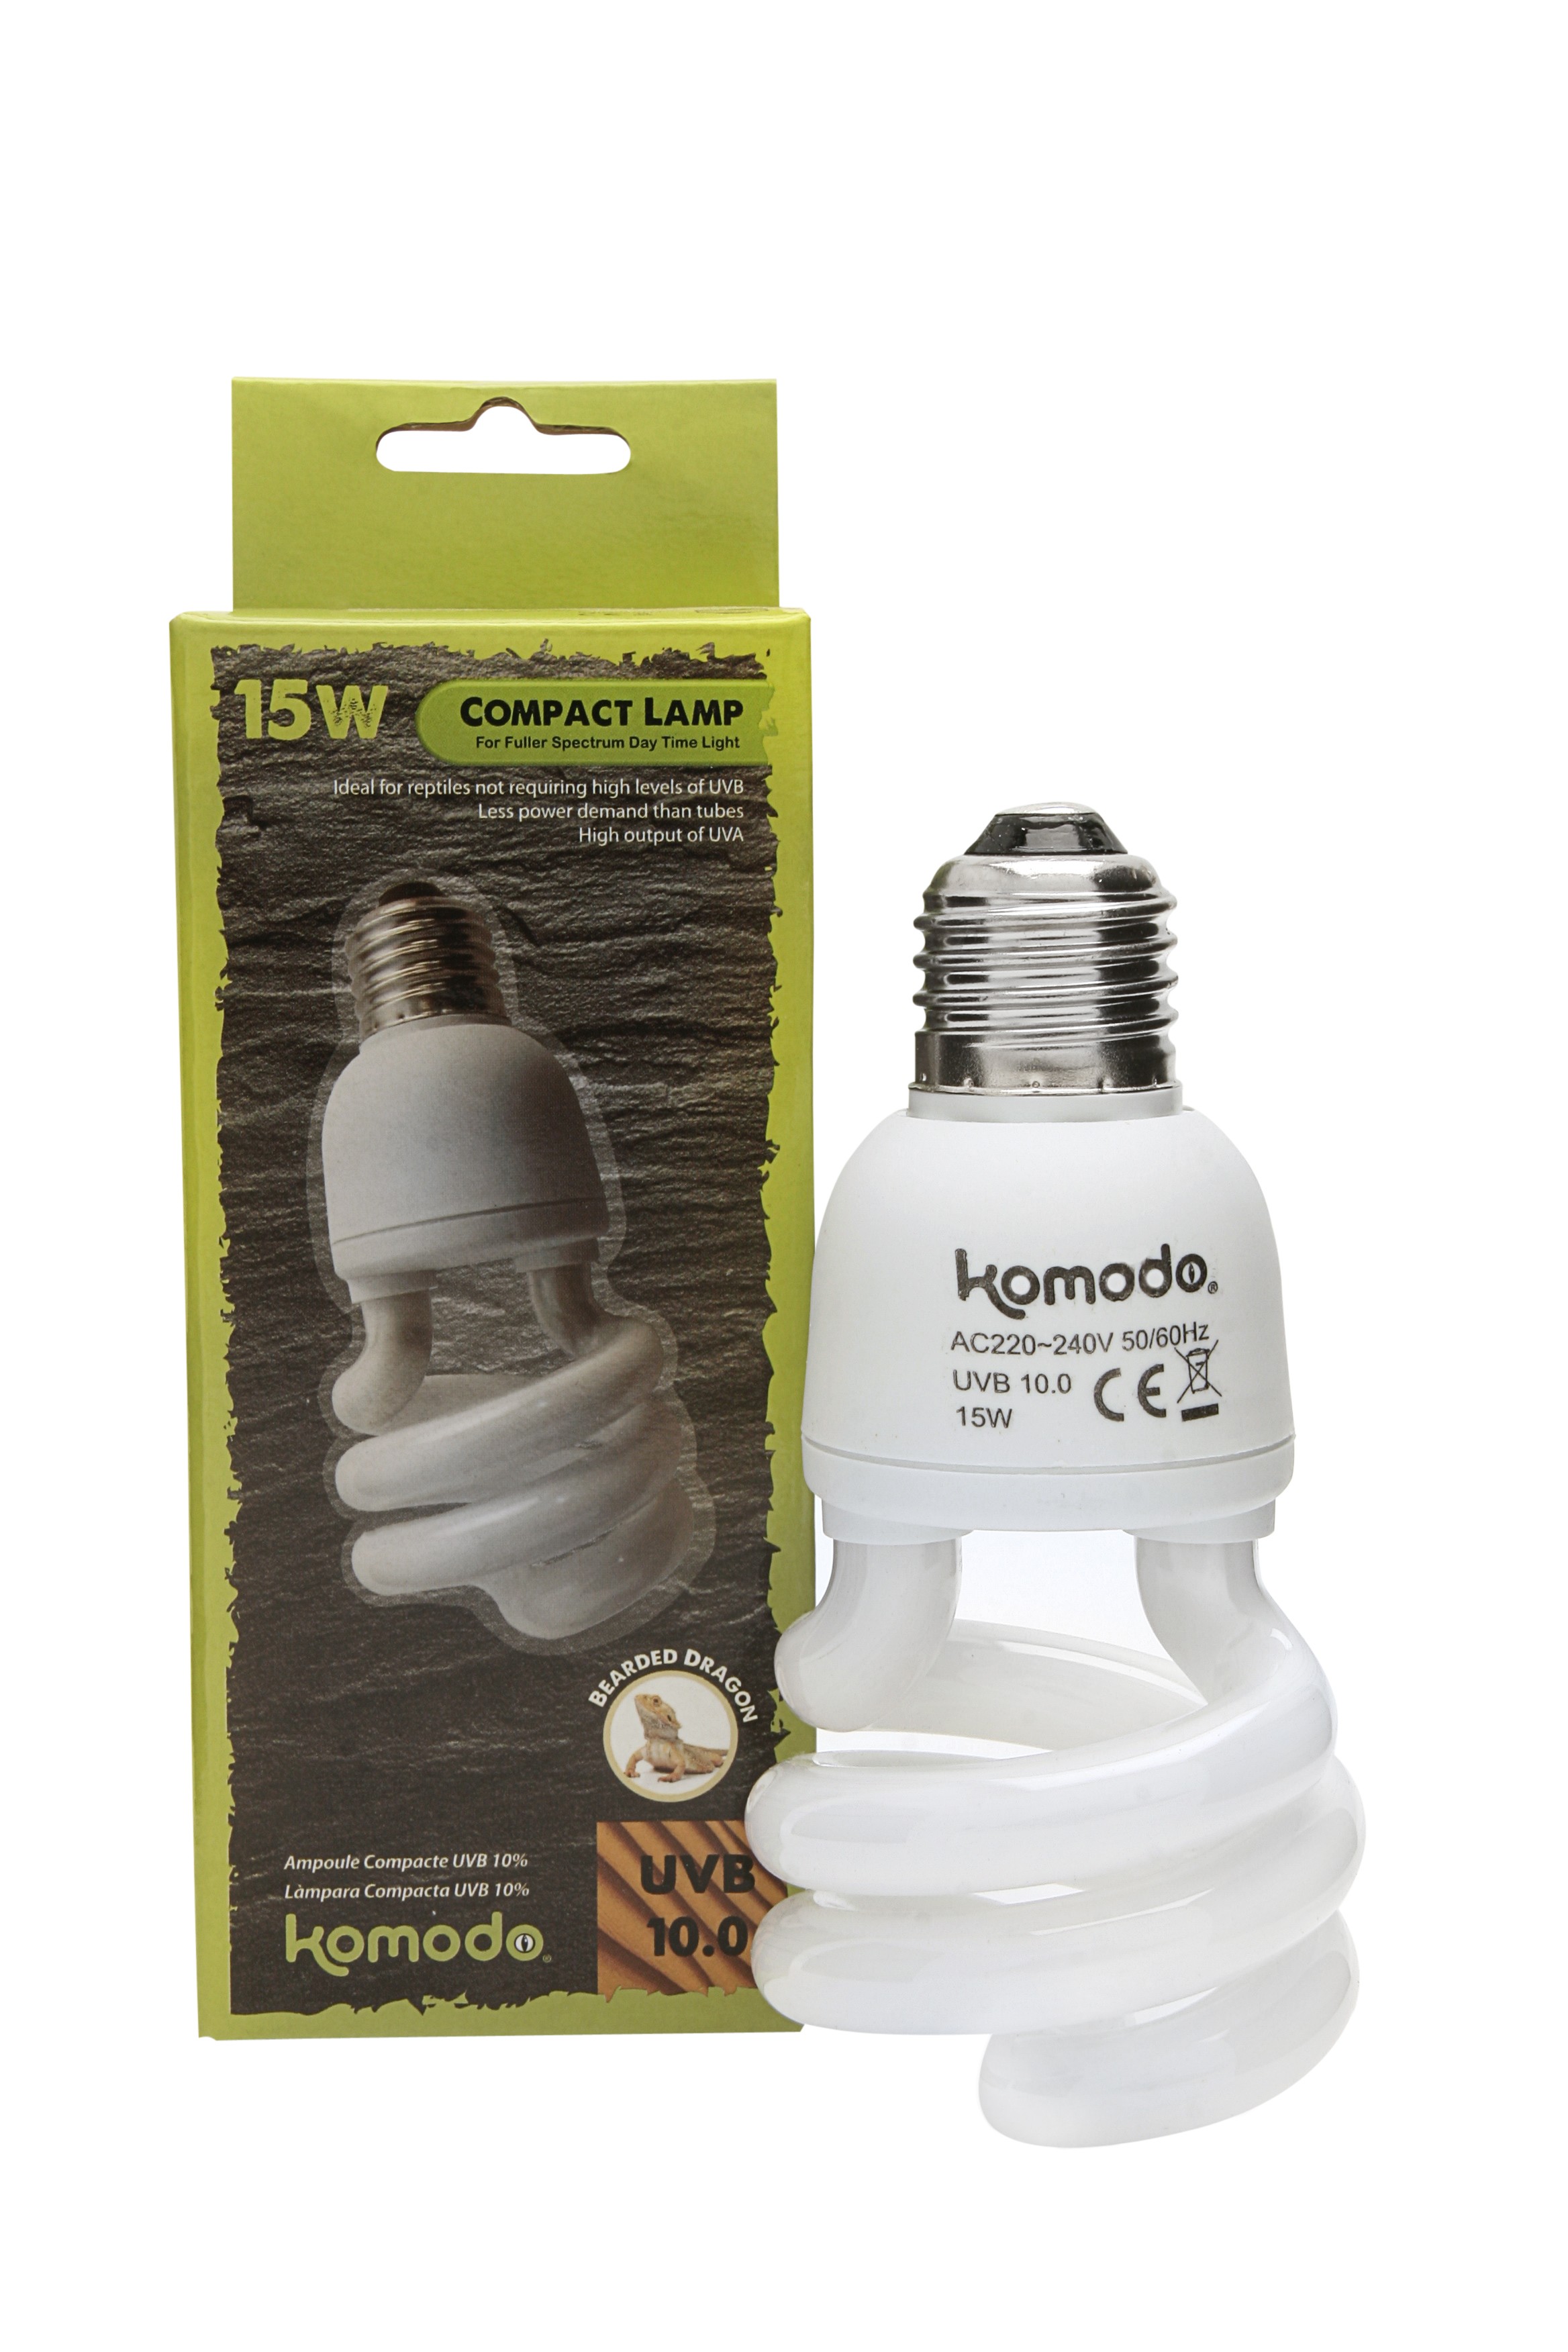 Komodo Compact Lamp UVB 10% ES